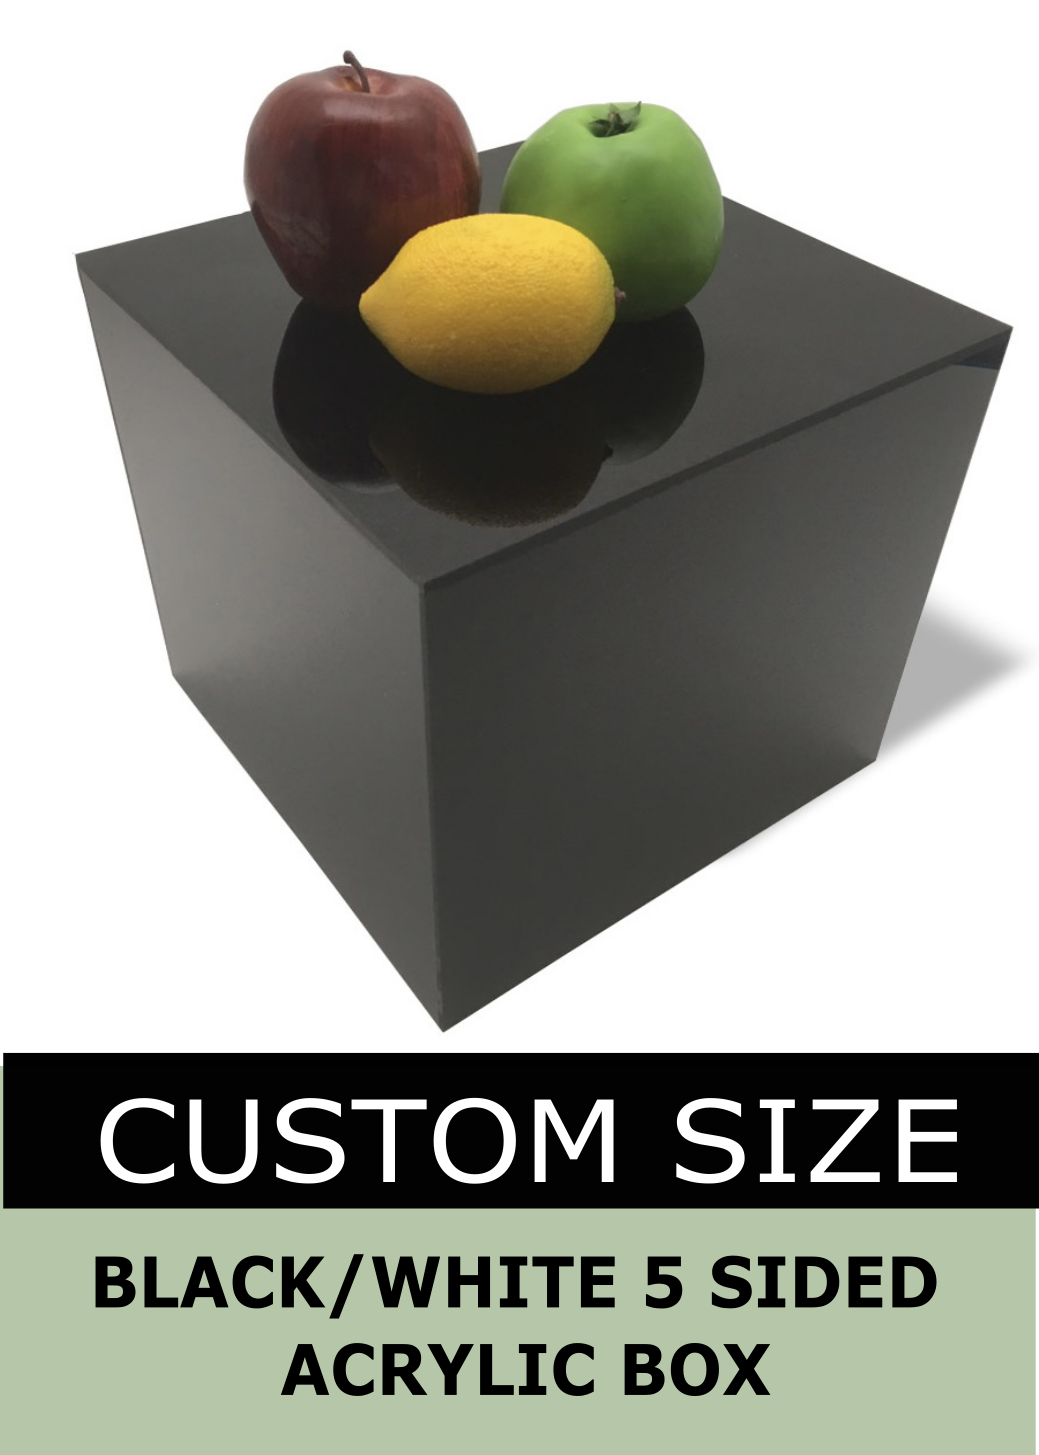 White / Black Acrylic 5-Sided Box - Custom Size